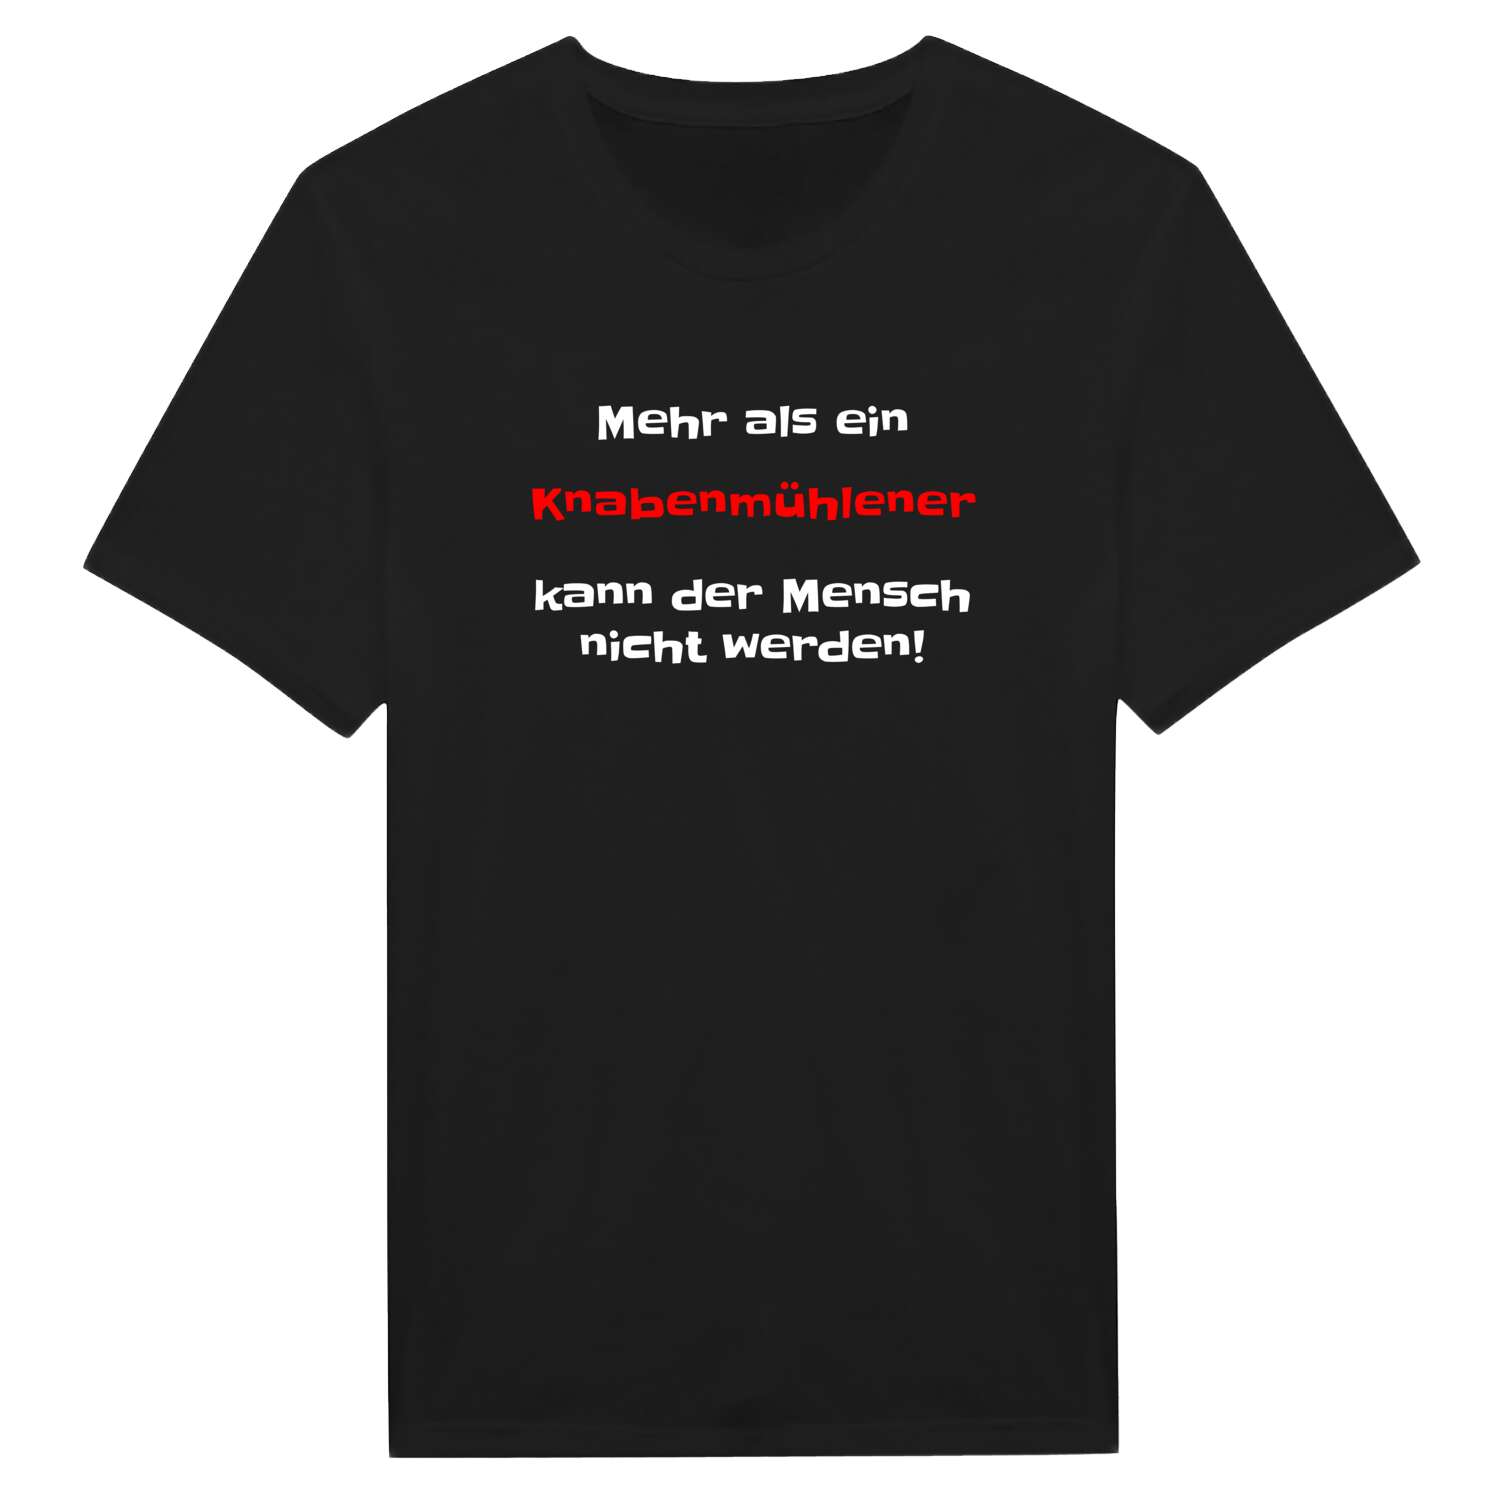 Knabenmühle T-Shirt »Mehr als ein«